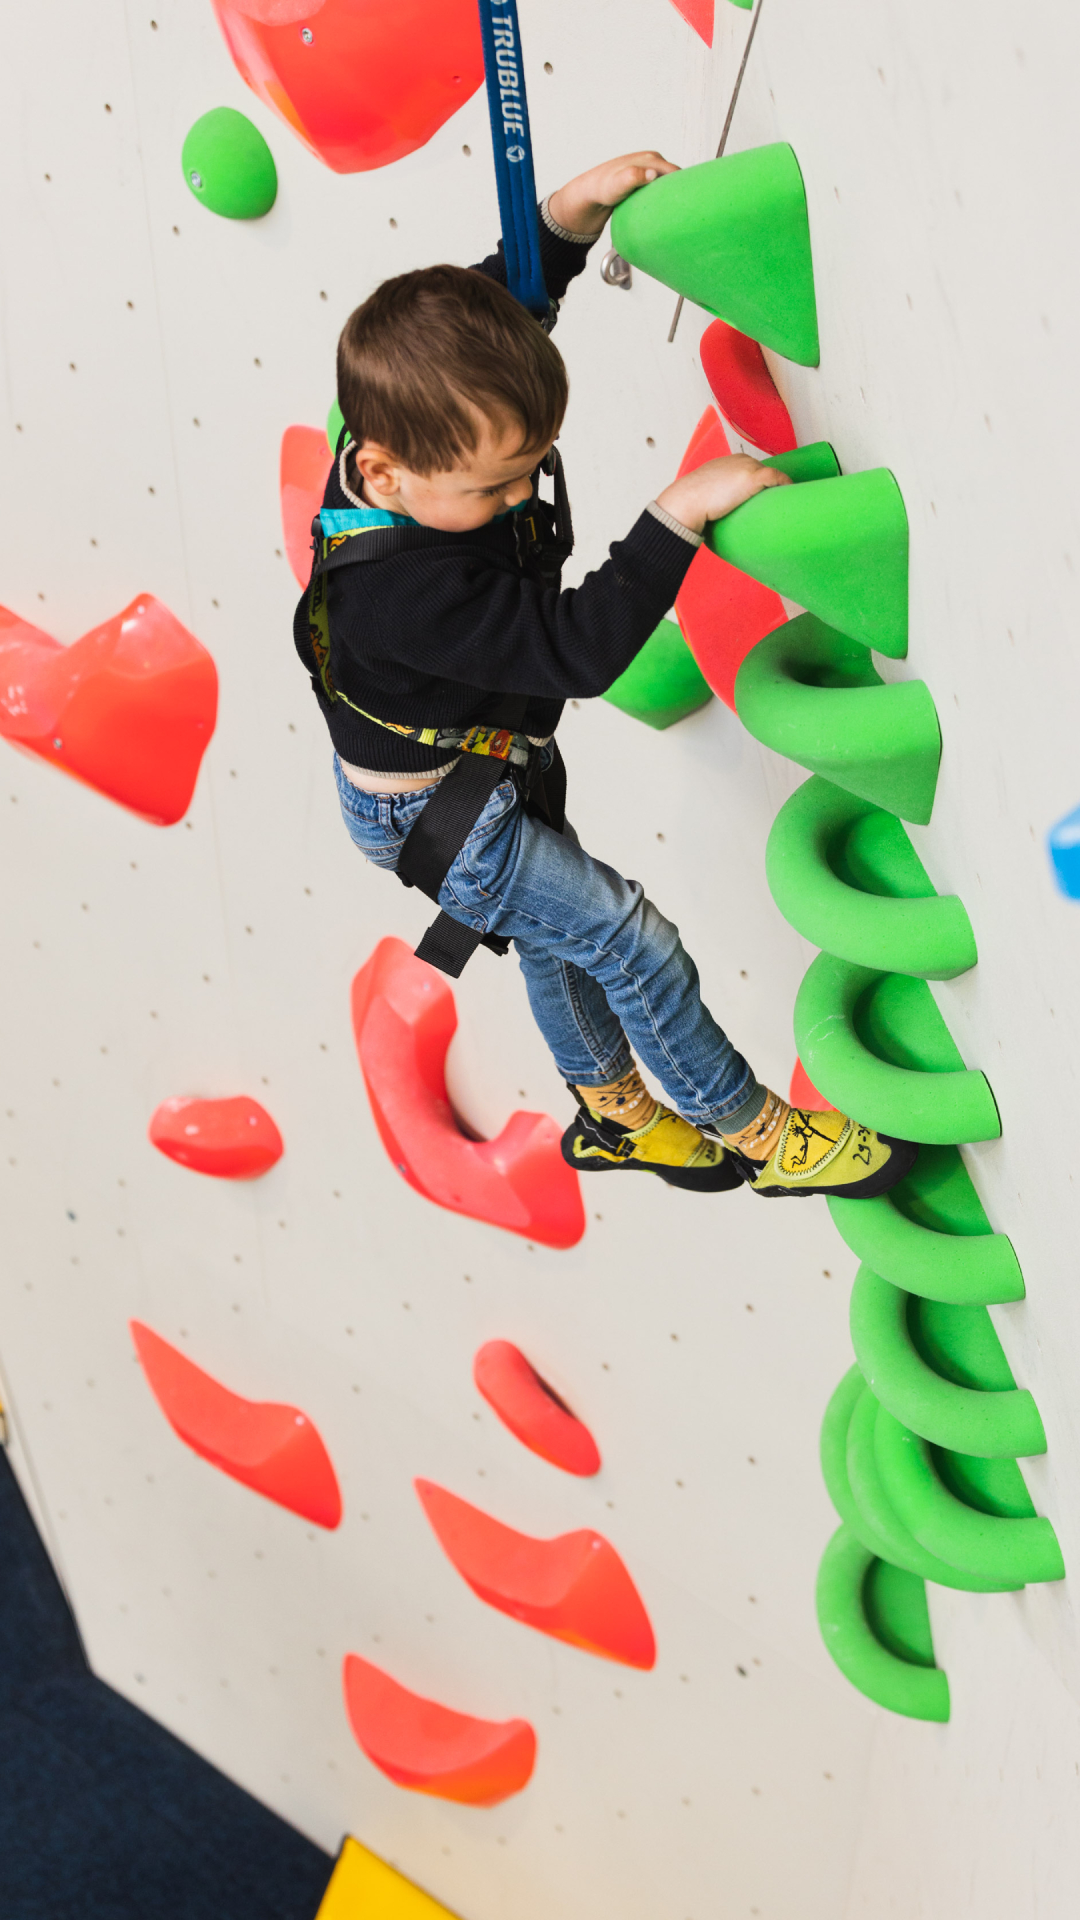 gym-kidszone-autobelay-kids-climbers-